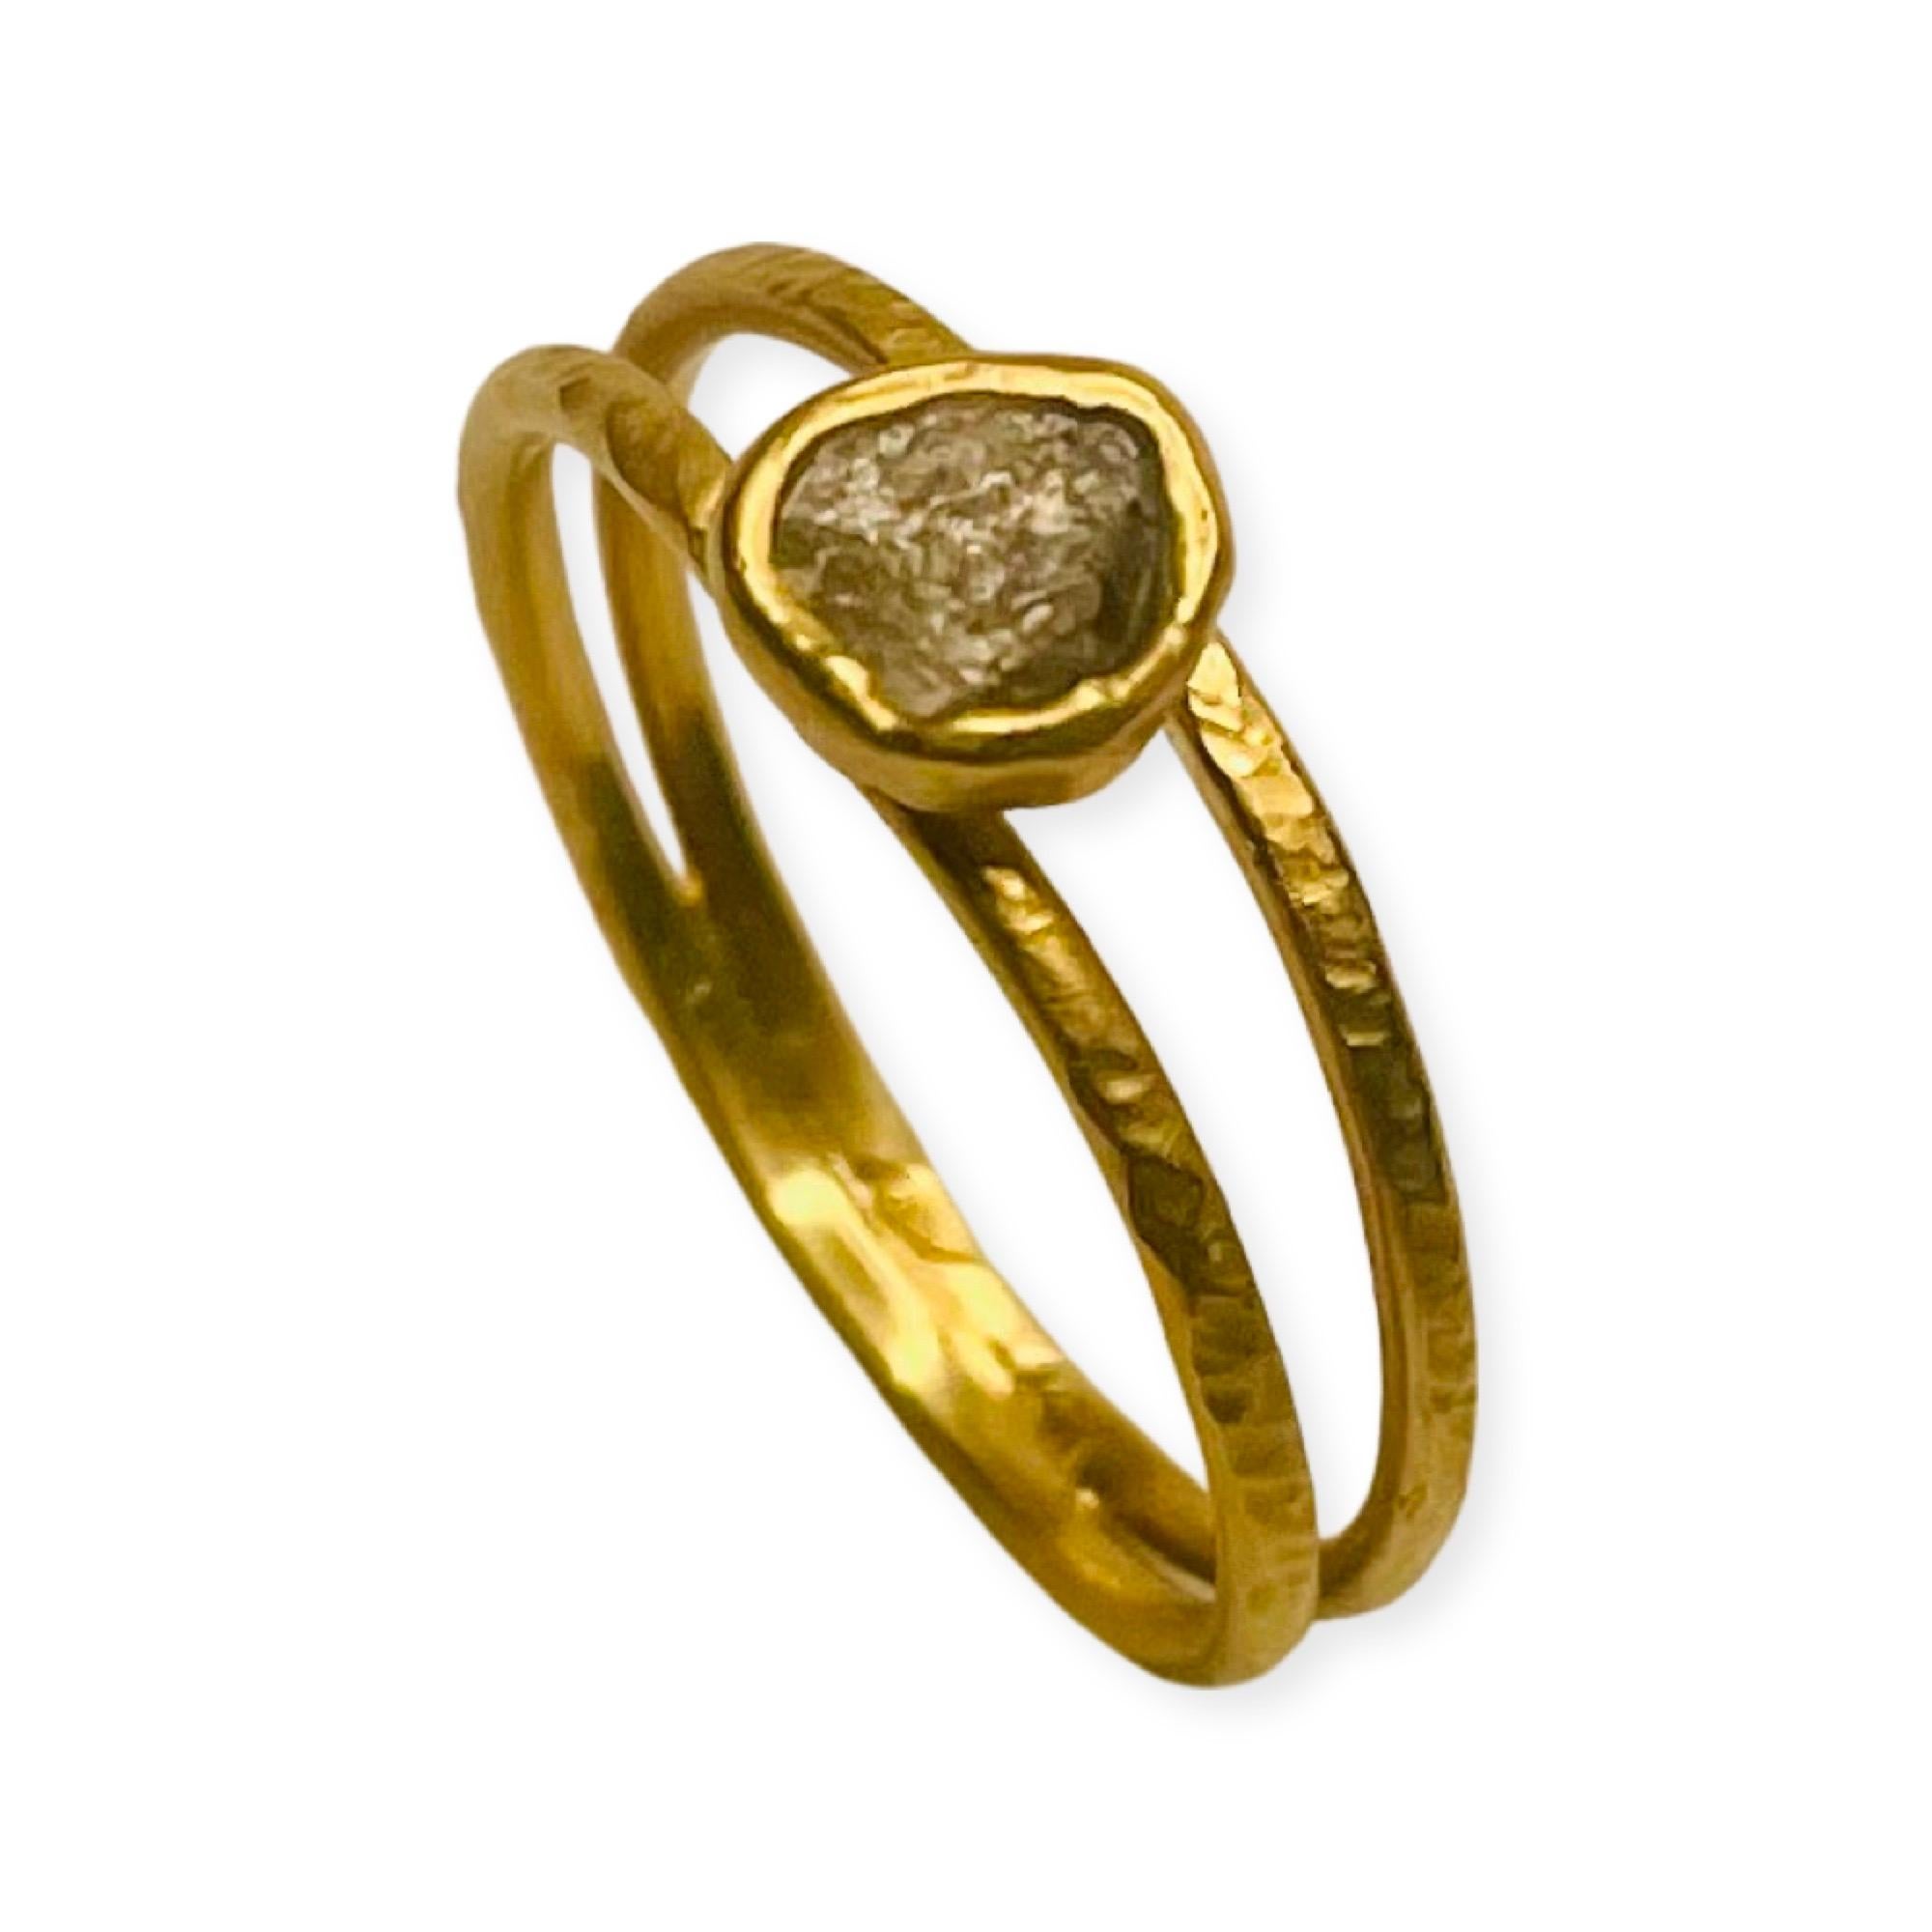 Dies ist ein 18KY Gold, Doppel-Band, Saphir-Ring.  Er ist handgefertigt. Der natürliche Saphir ist ein Rohstein, der in Phillipsburg, MT, am Gem Mountain abgebaut wird. Sie ist unbehandelt. Die obere Lünette misst 4,48 mm x 2,22 mm. Der Saphir wiegt